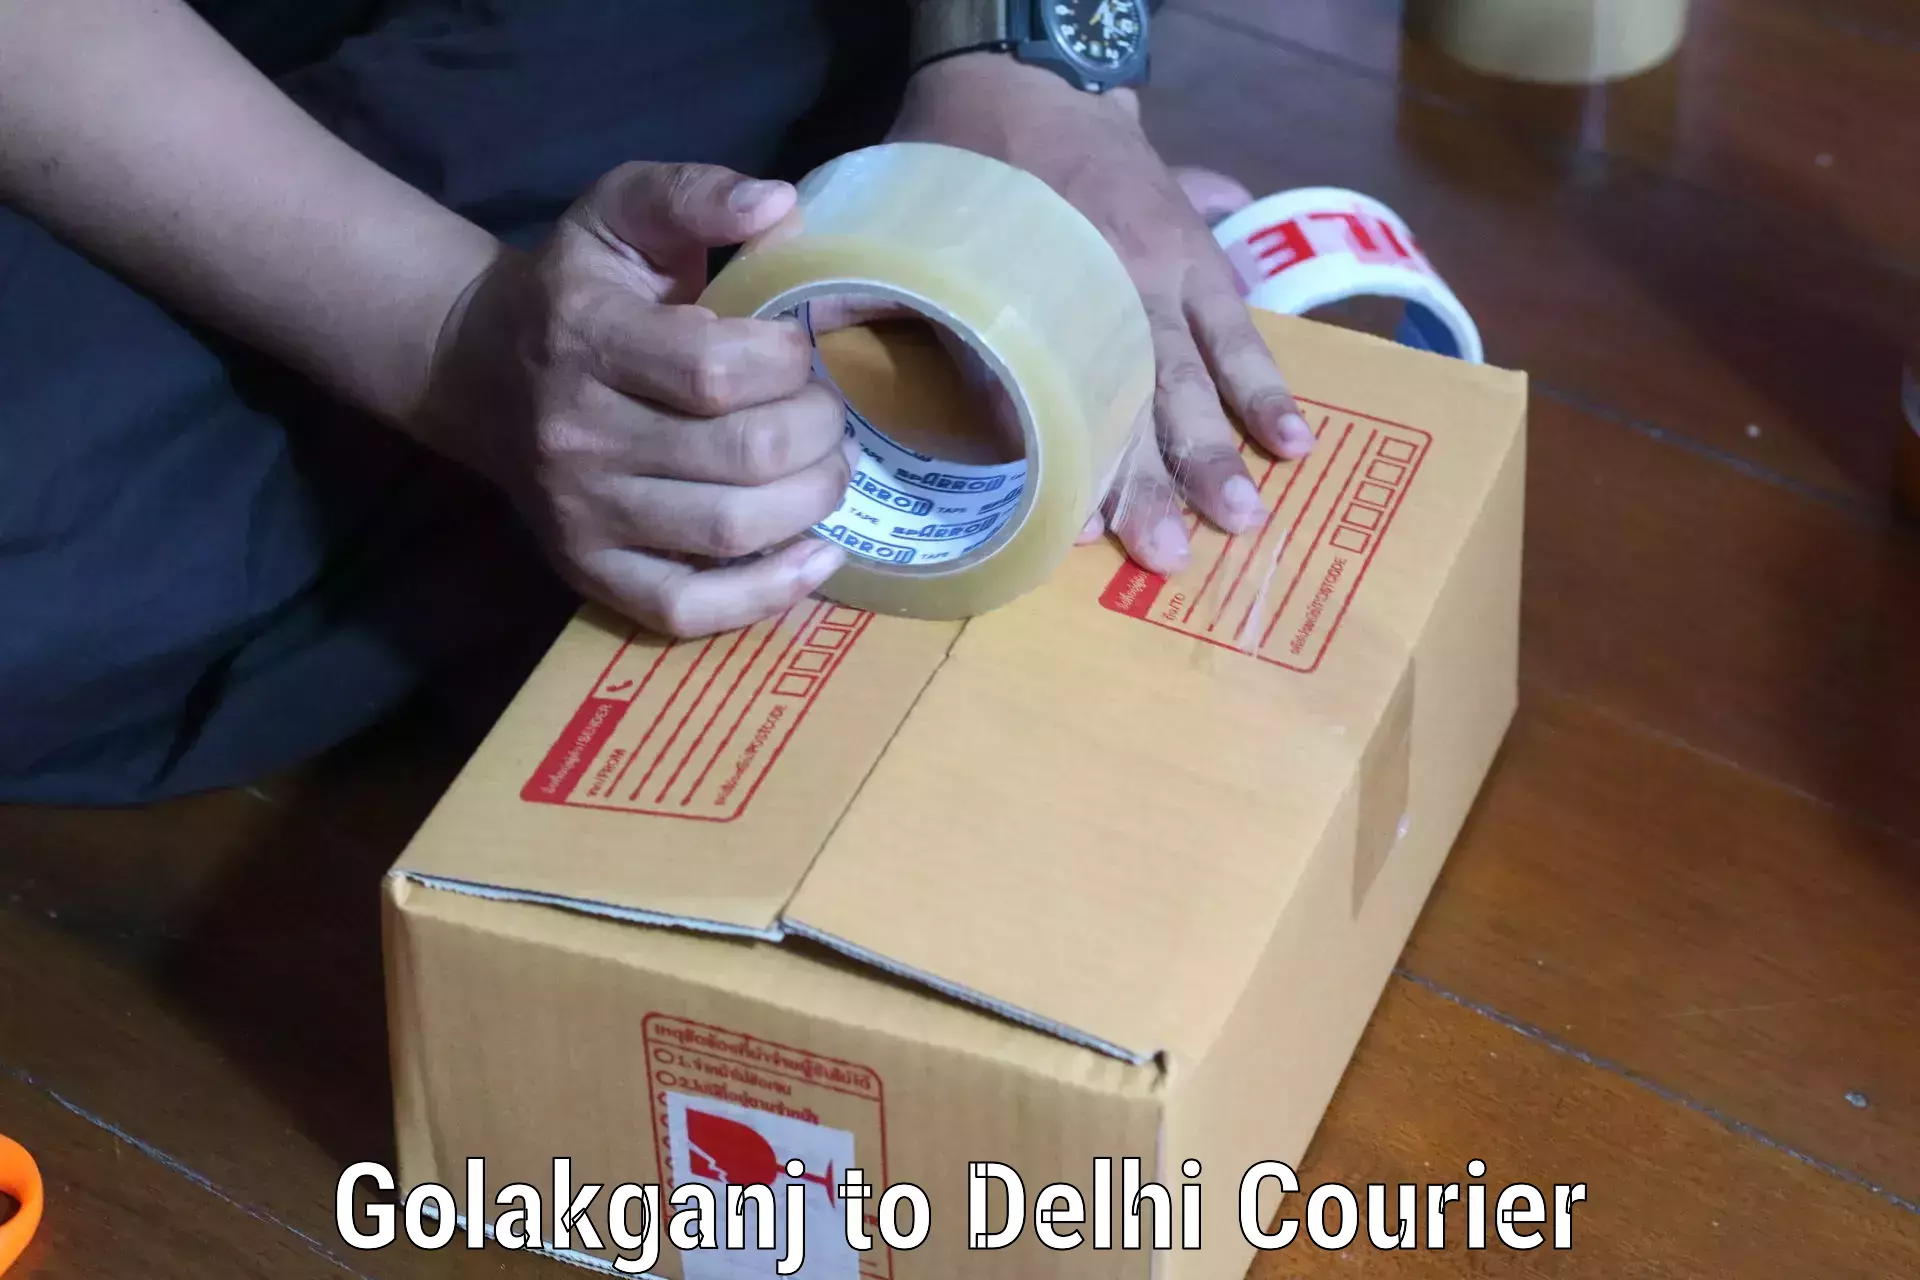 Global courier networks Golakganj to East Delhi